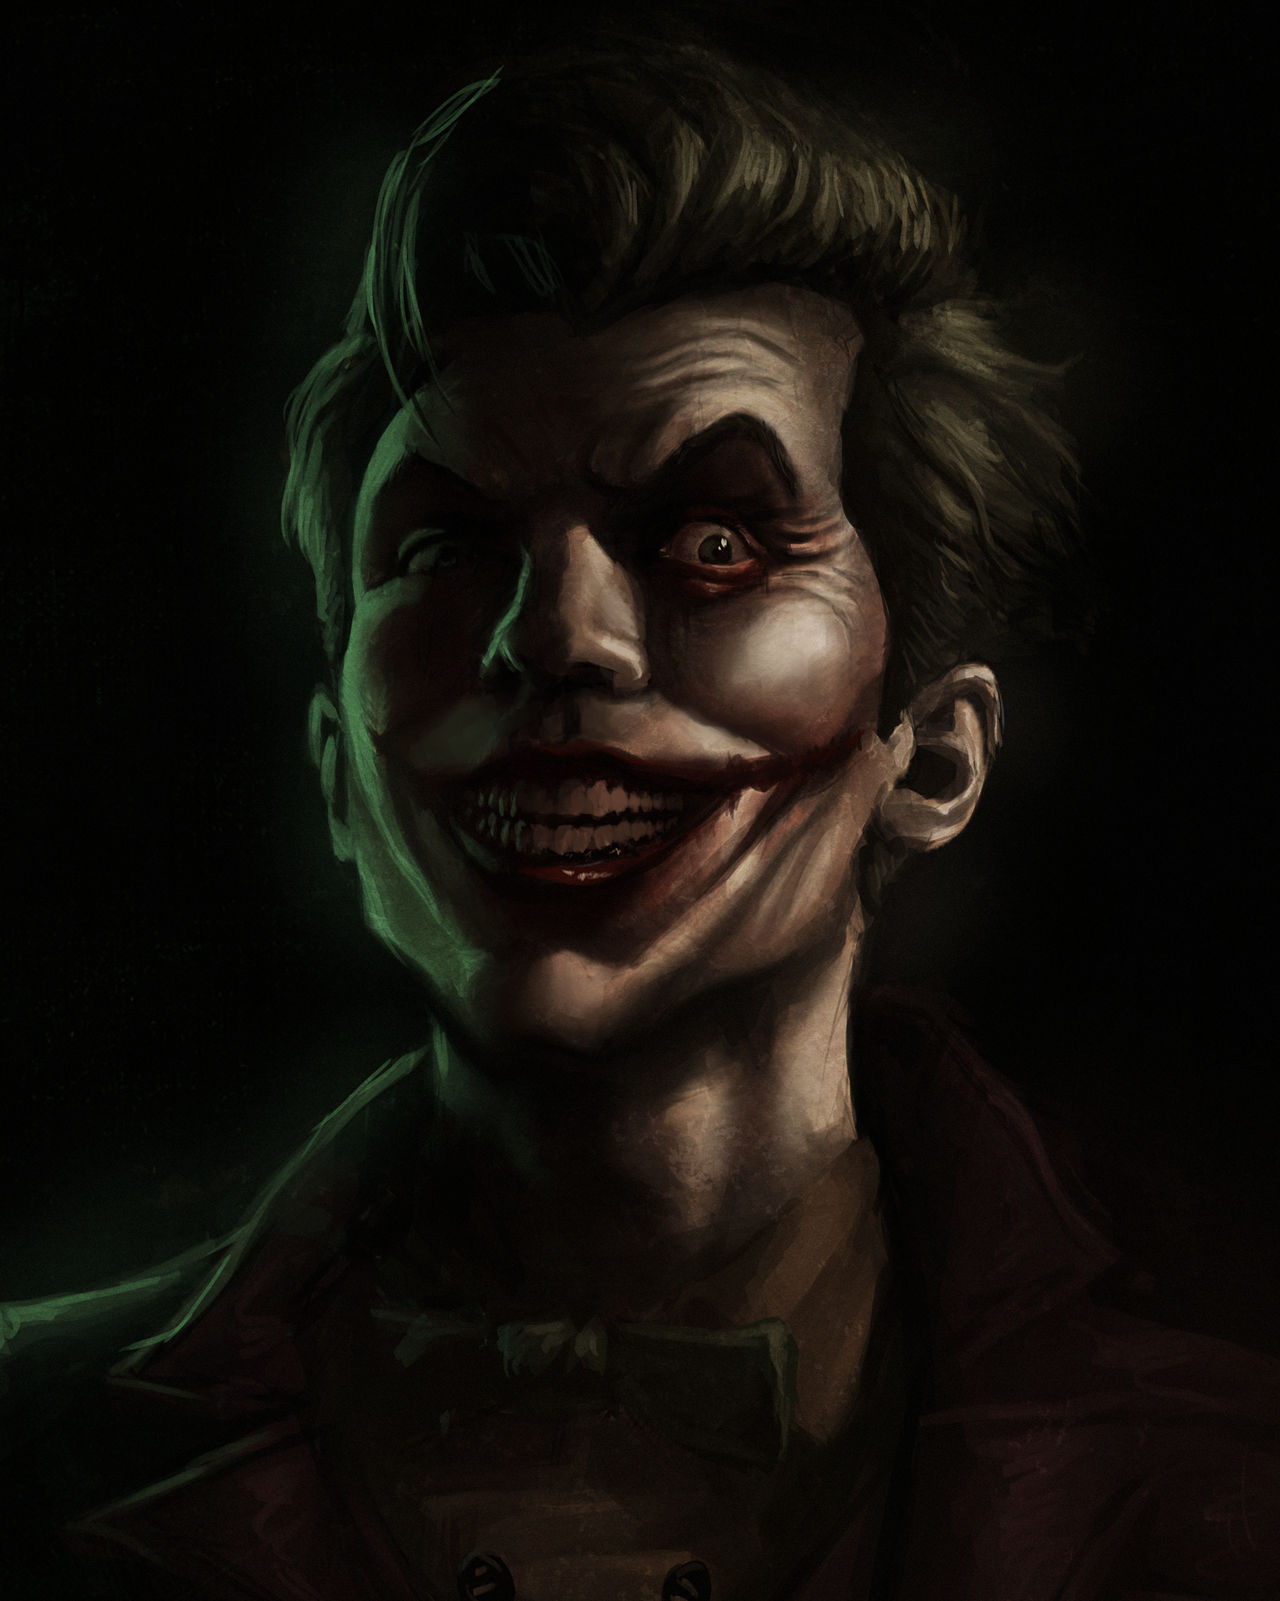 Joker Portrait by Aphelion-Art on DeviantArt